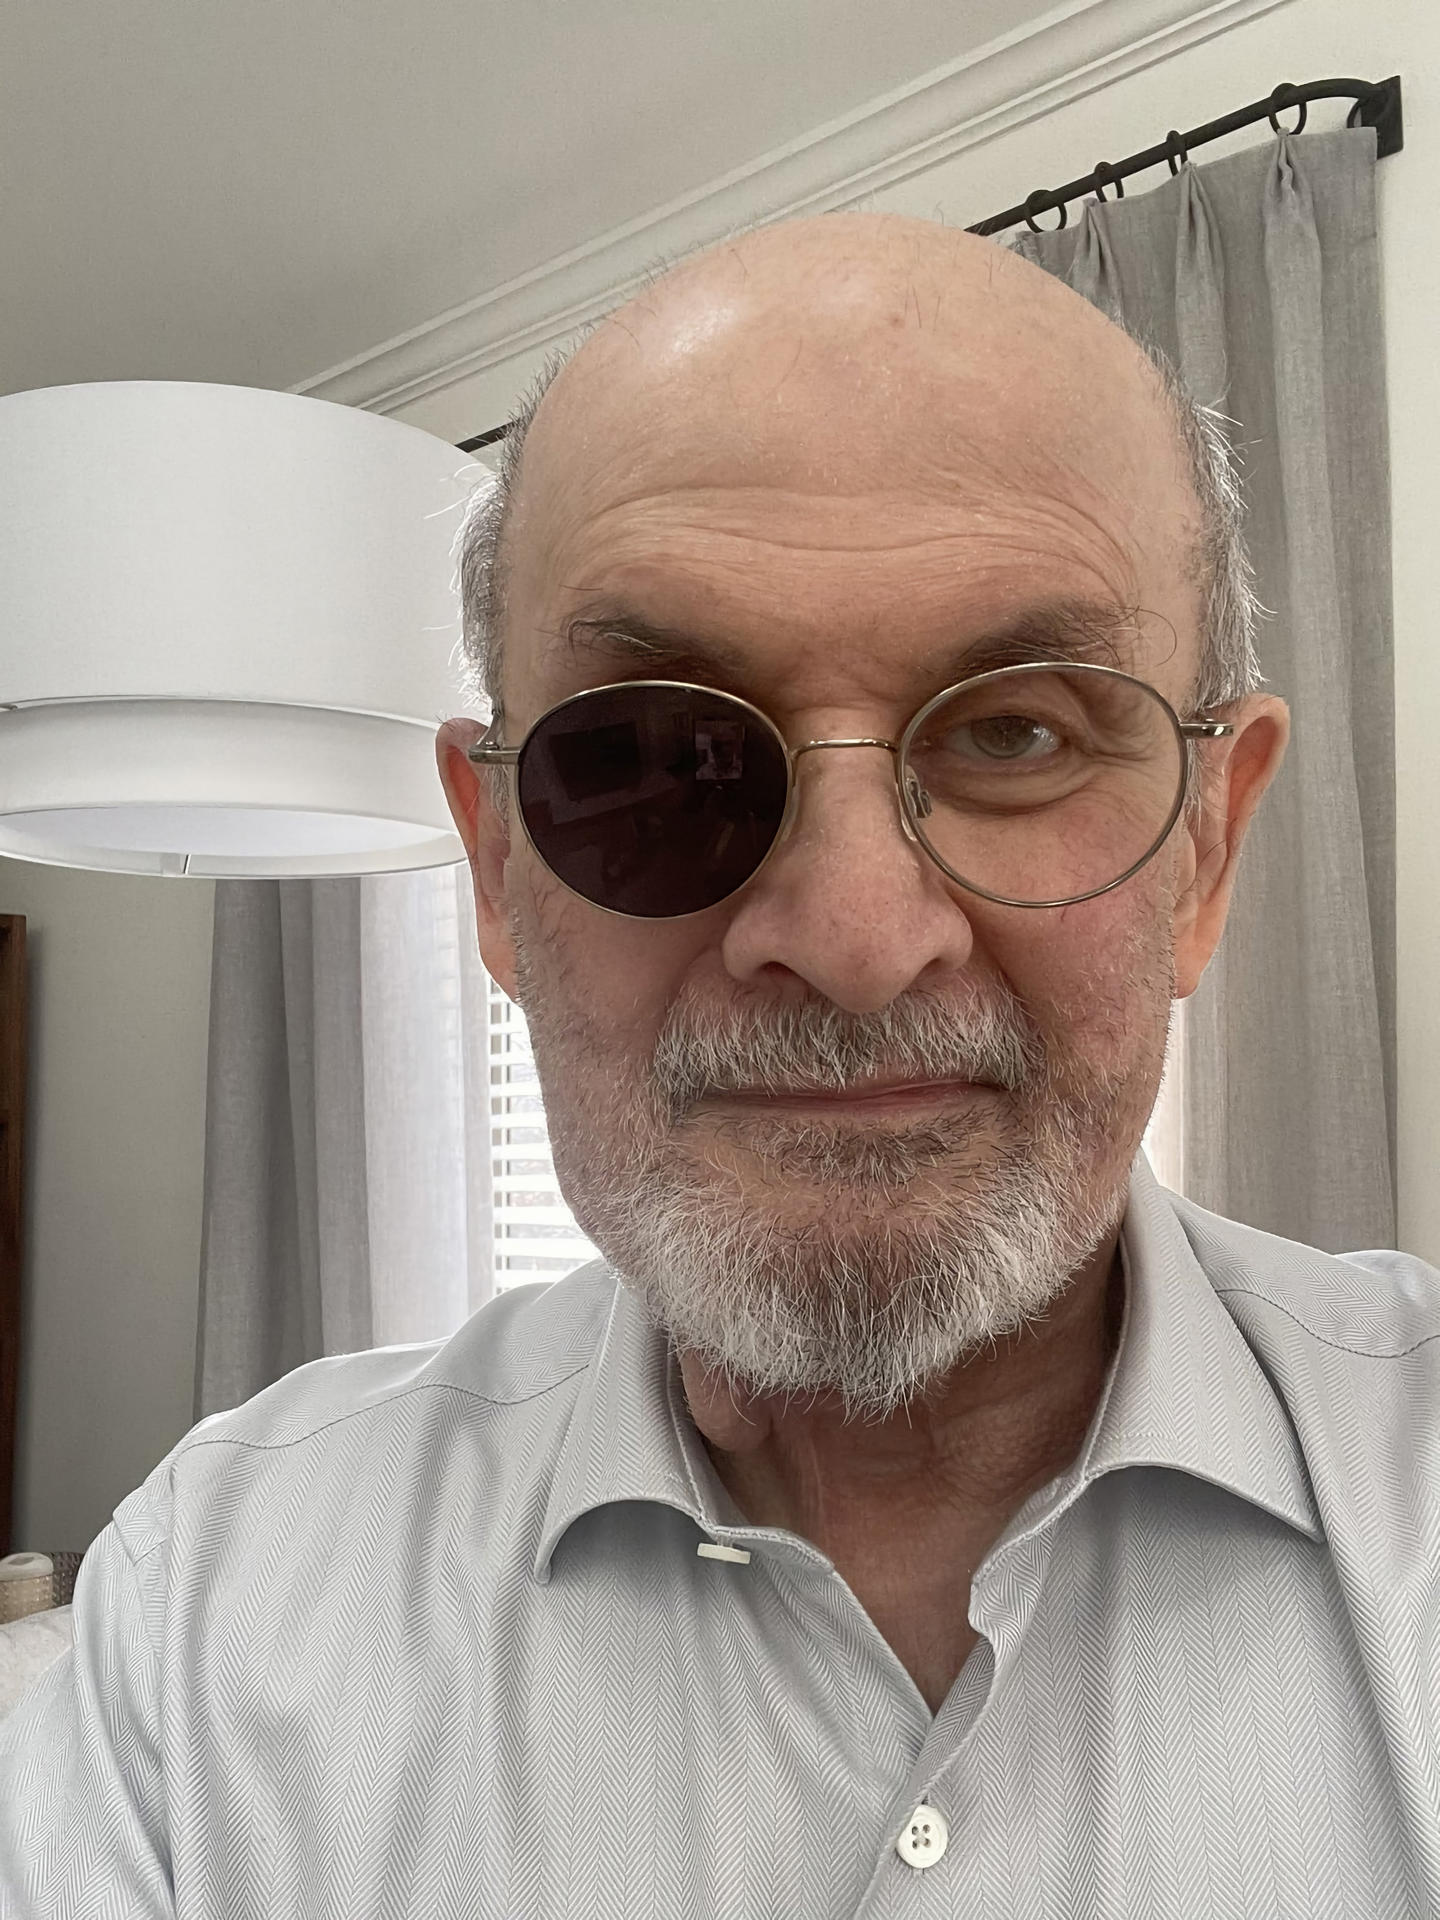 Fotografía publicada por el escritor Salman Rushdie en su cuenta de Twitter.